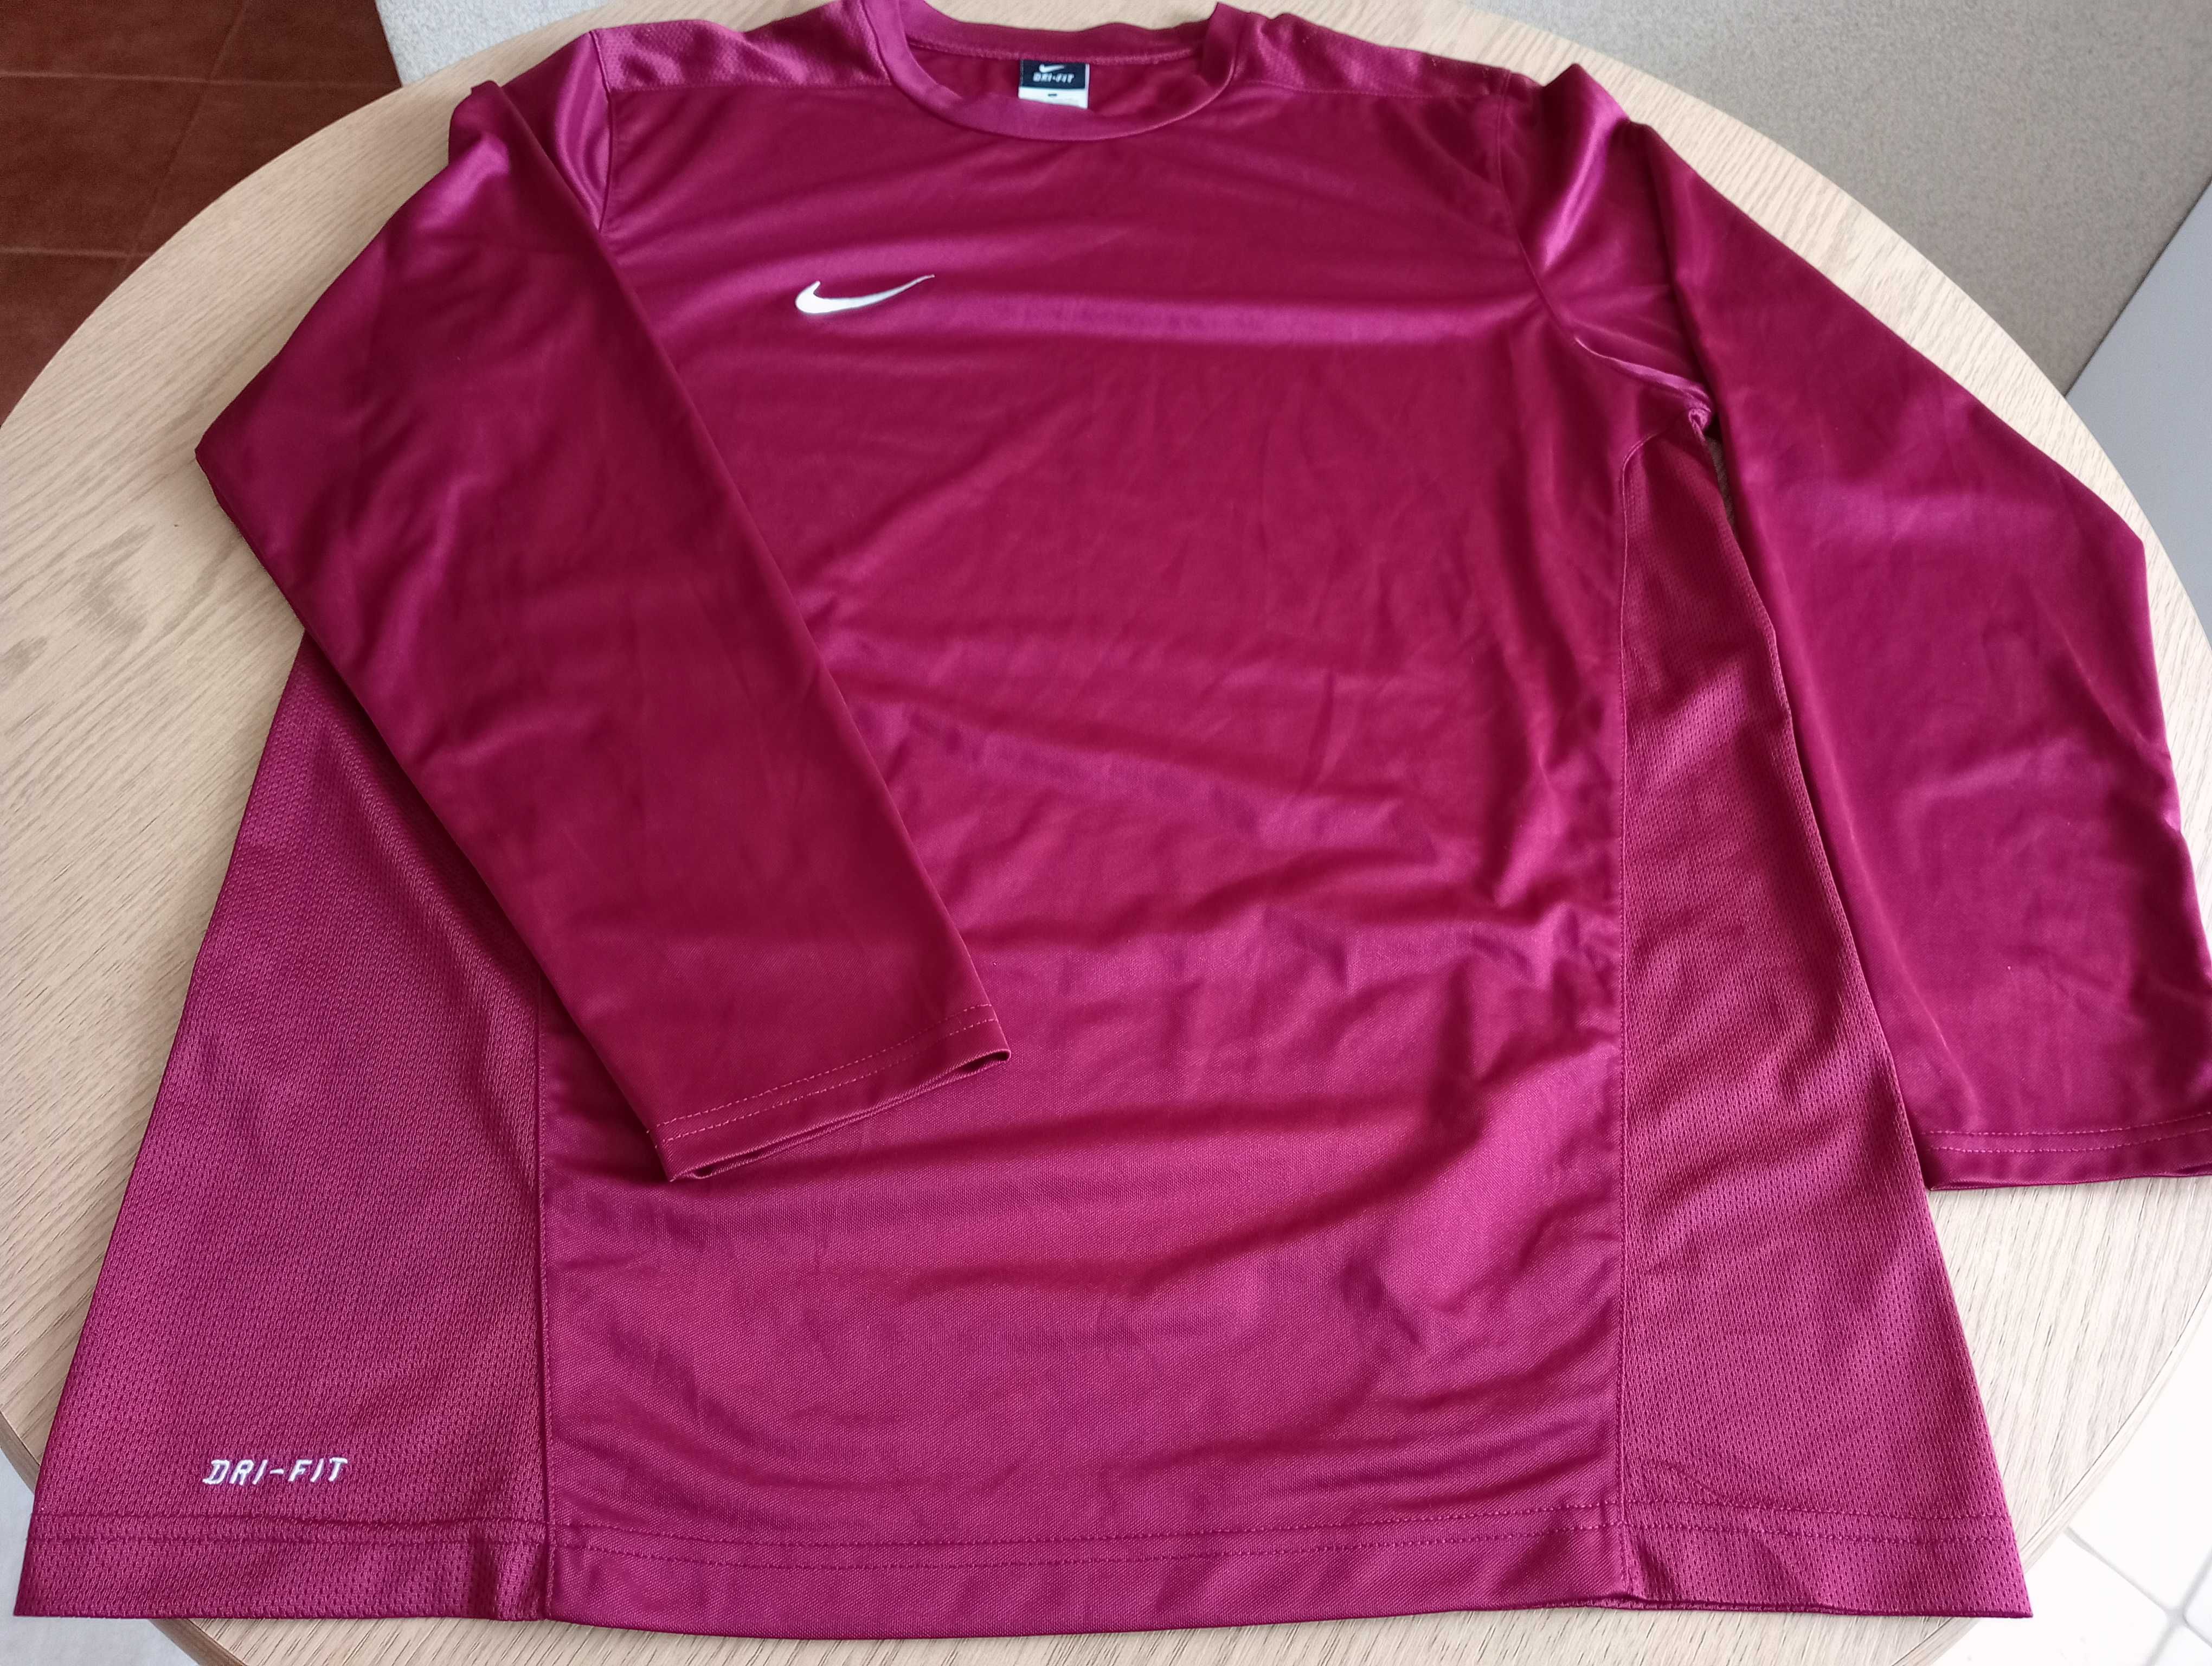 Koszulka sportowa Nike, rozmiar L.